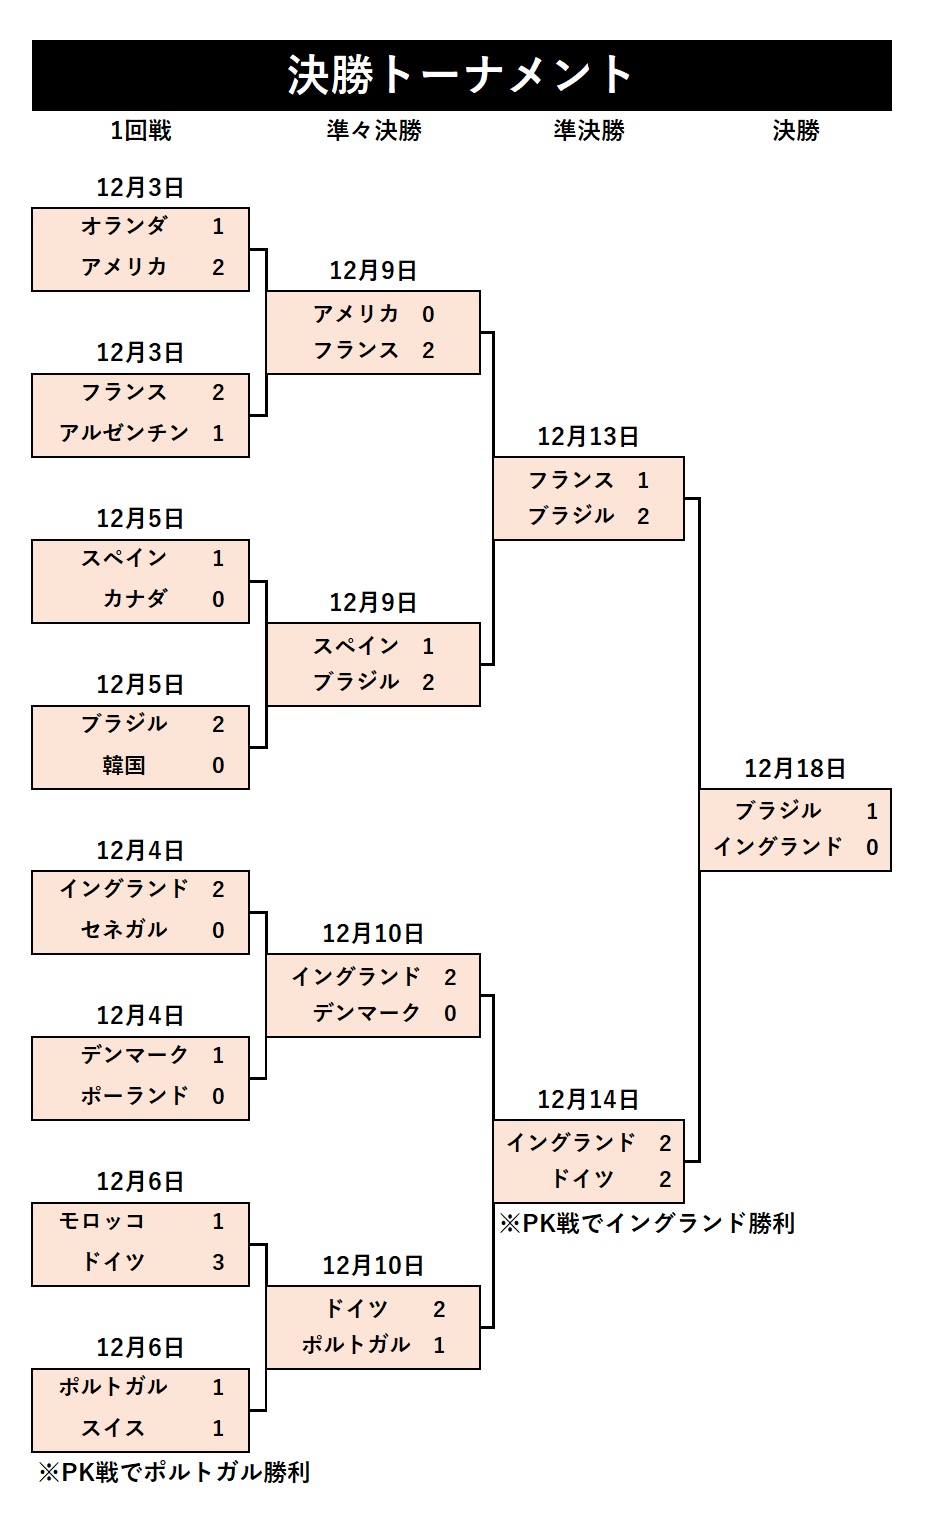 カタールw杯 全カード スコア 勝敗 米予想 日本代表は1勝2敗 3得点5失点 勝つ必要がある のは フットボールゾーン 3